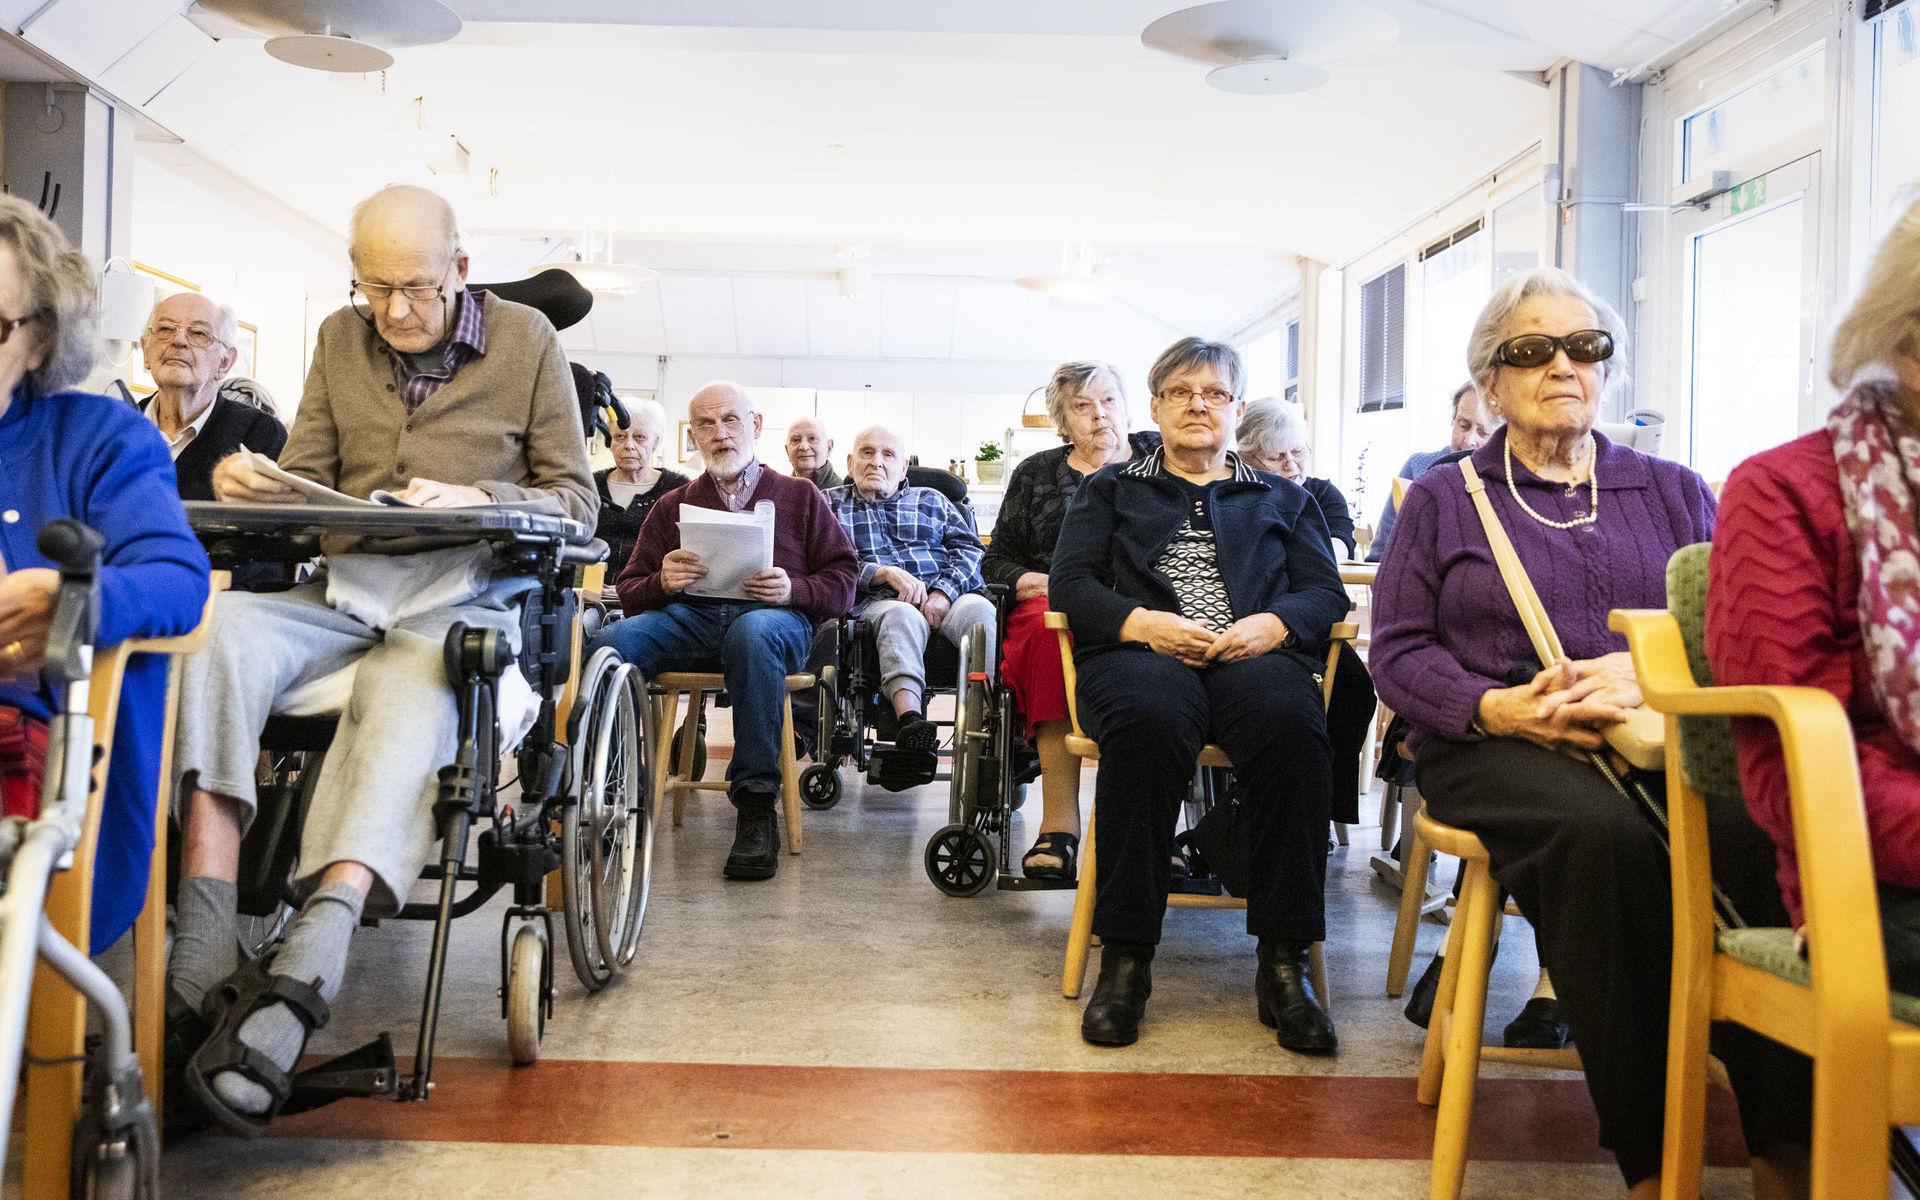 Första måndagen varje månad samlas boende och tillresta på Åkerhus äldreboende och sjunger allsång tillsammans.